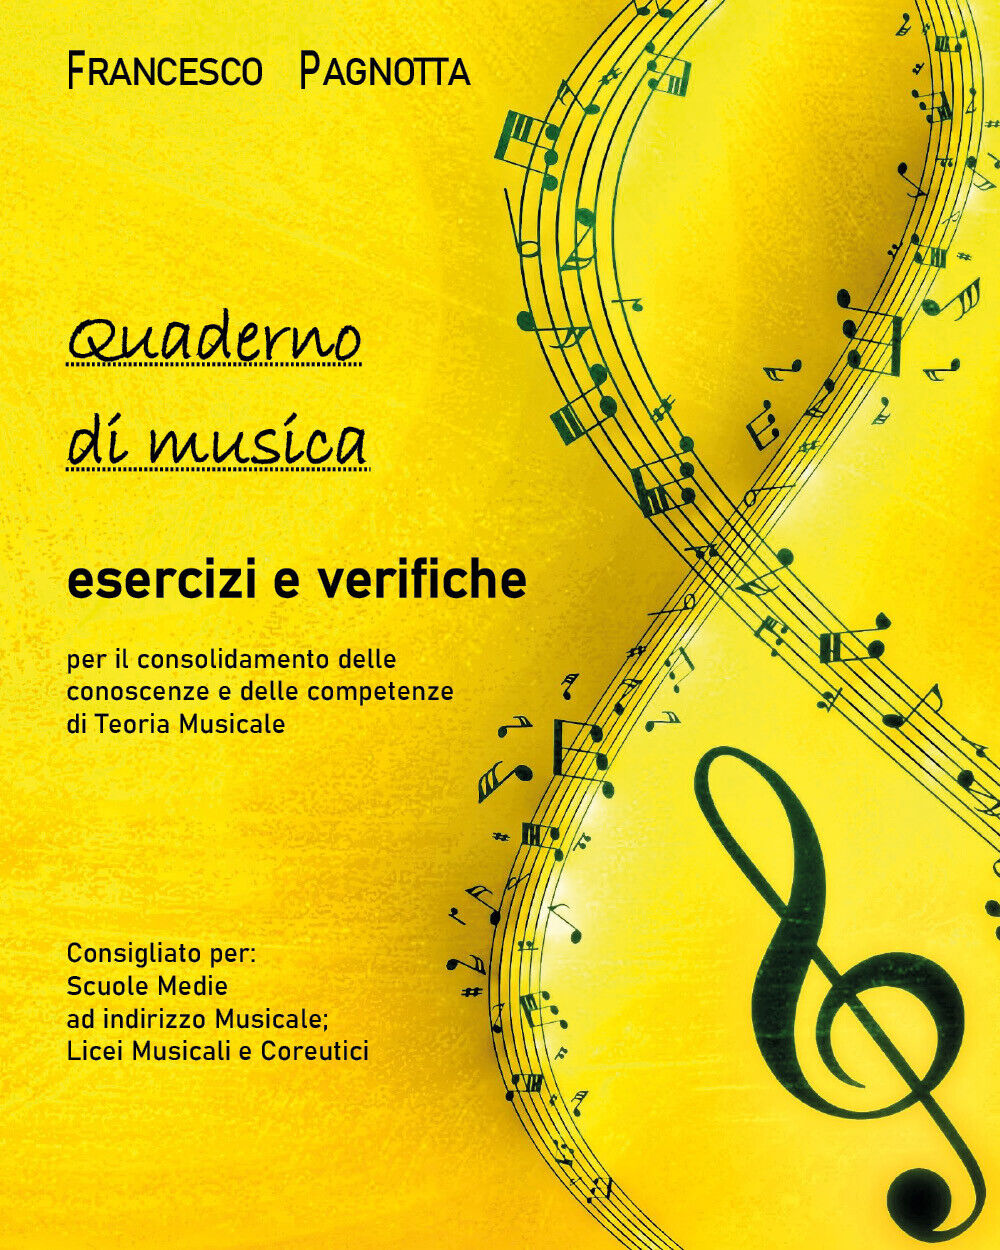 Quaderno di musica: esercizi e verifiche di Francesco Pagnotta,  2021,  Youcanpr